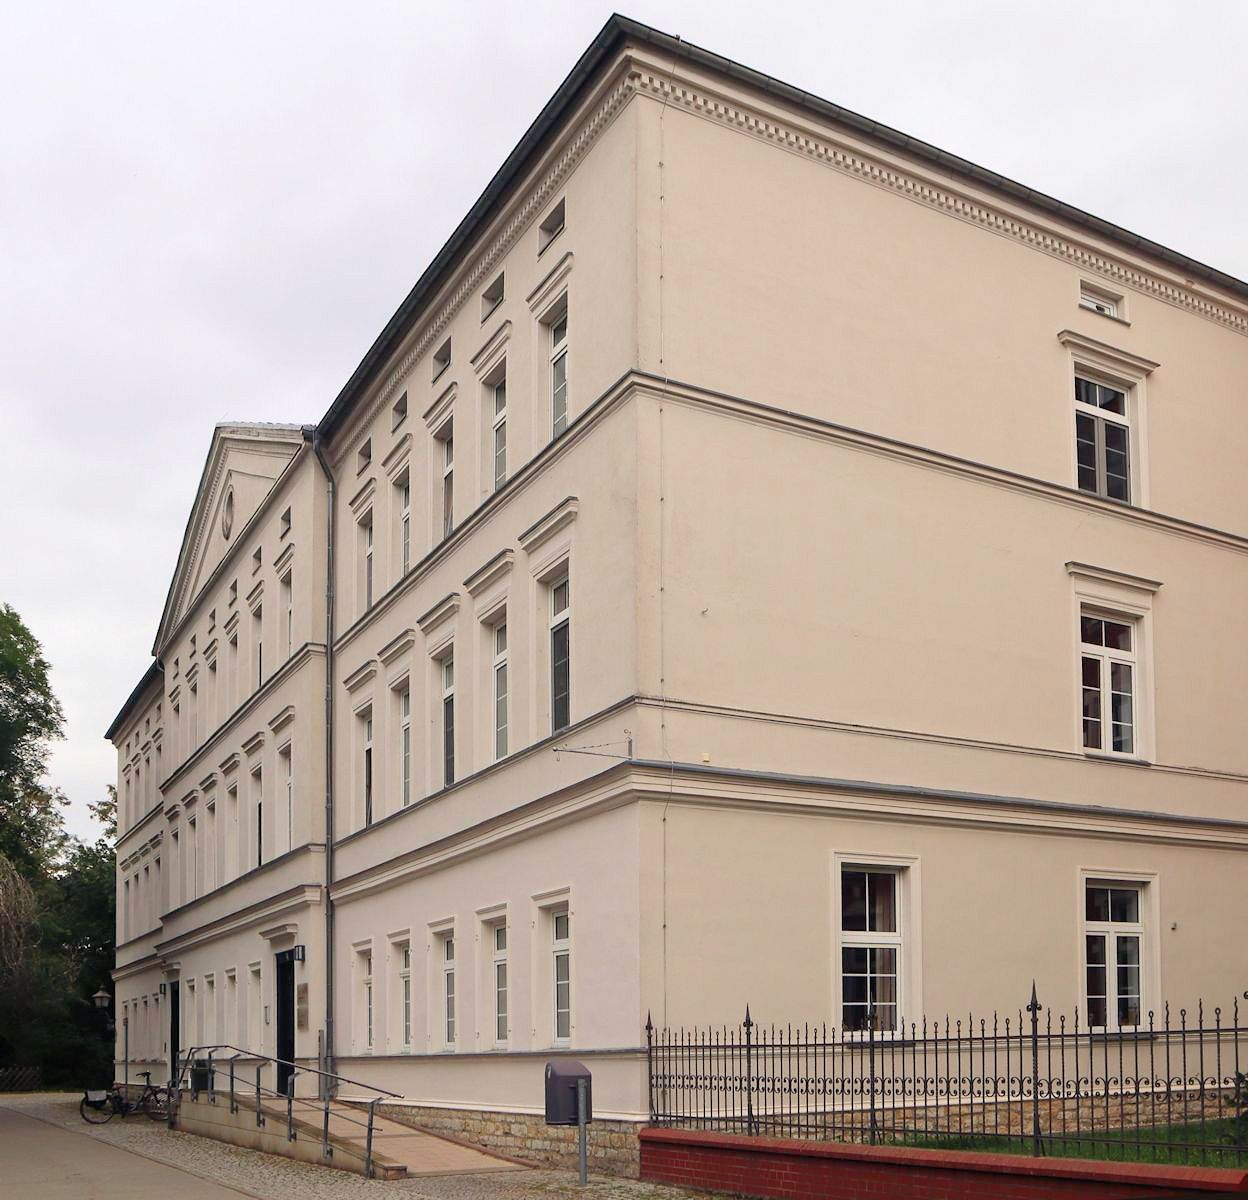 Unterrichtsanstalten in Gnadau, erbaut 1864, heute Altersheim